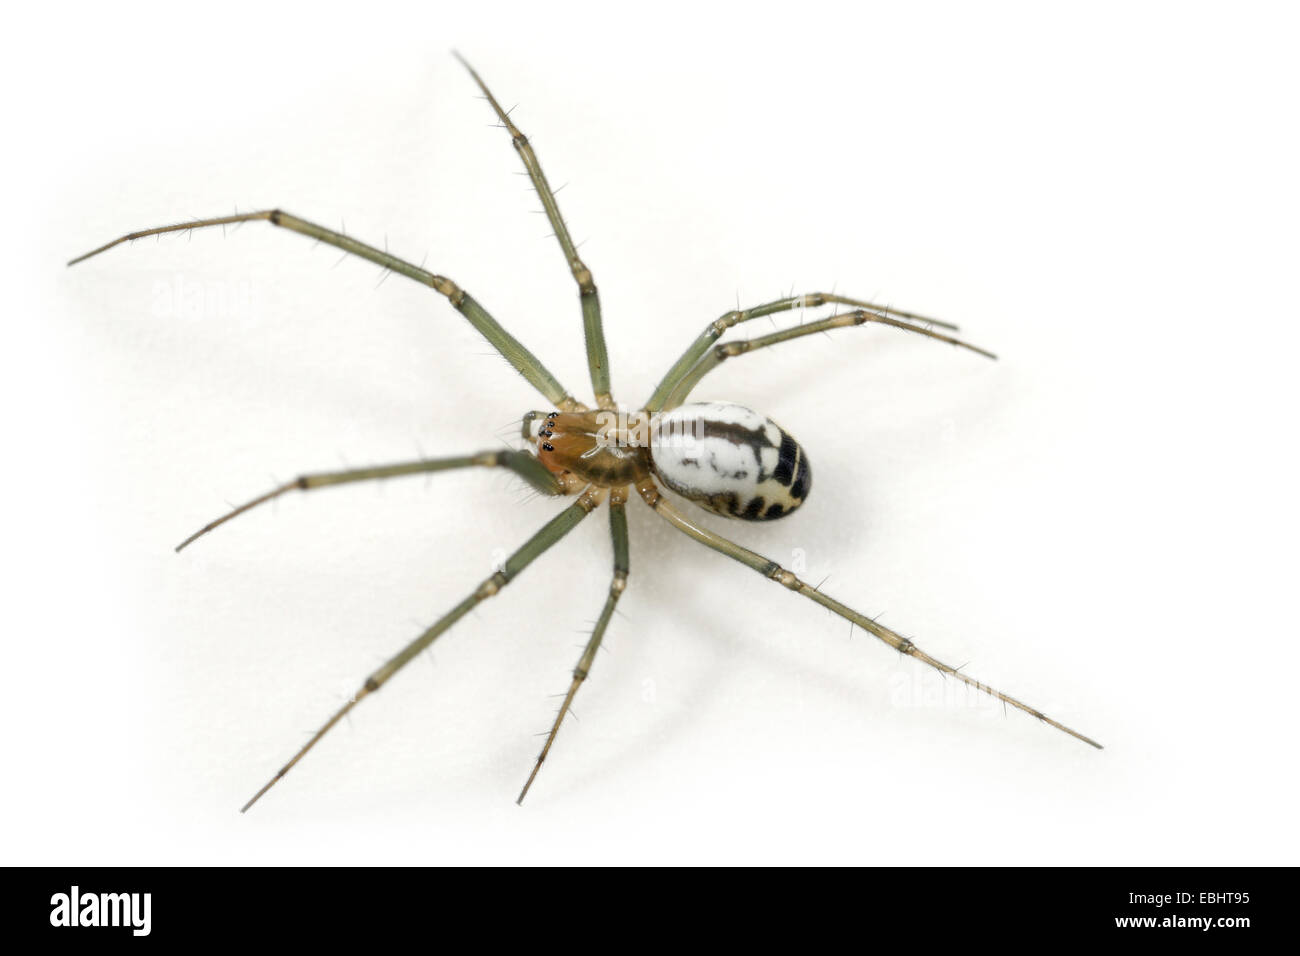 Eine weibliche Black-Tailed Hammock-Spider (Neriene emphana) auf einem weißen Hintergrund, ein Teil der Familie - Linyphiidae Sheetweb Weber. Stockfoto